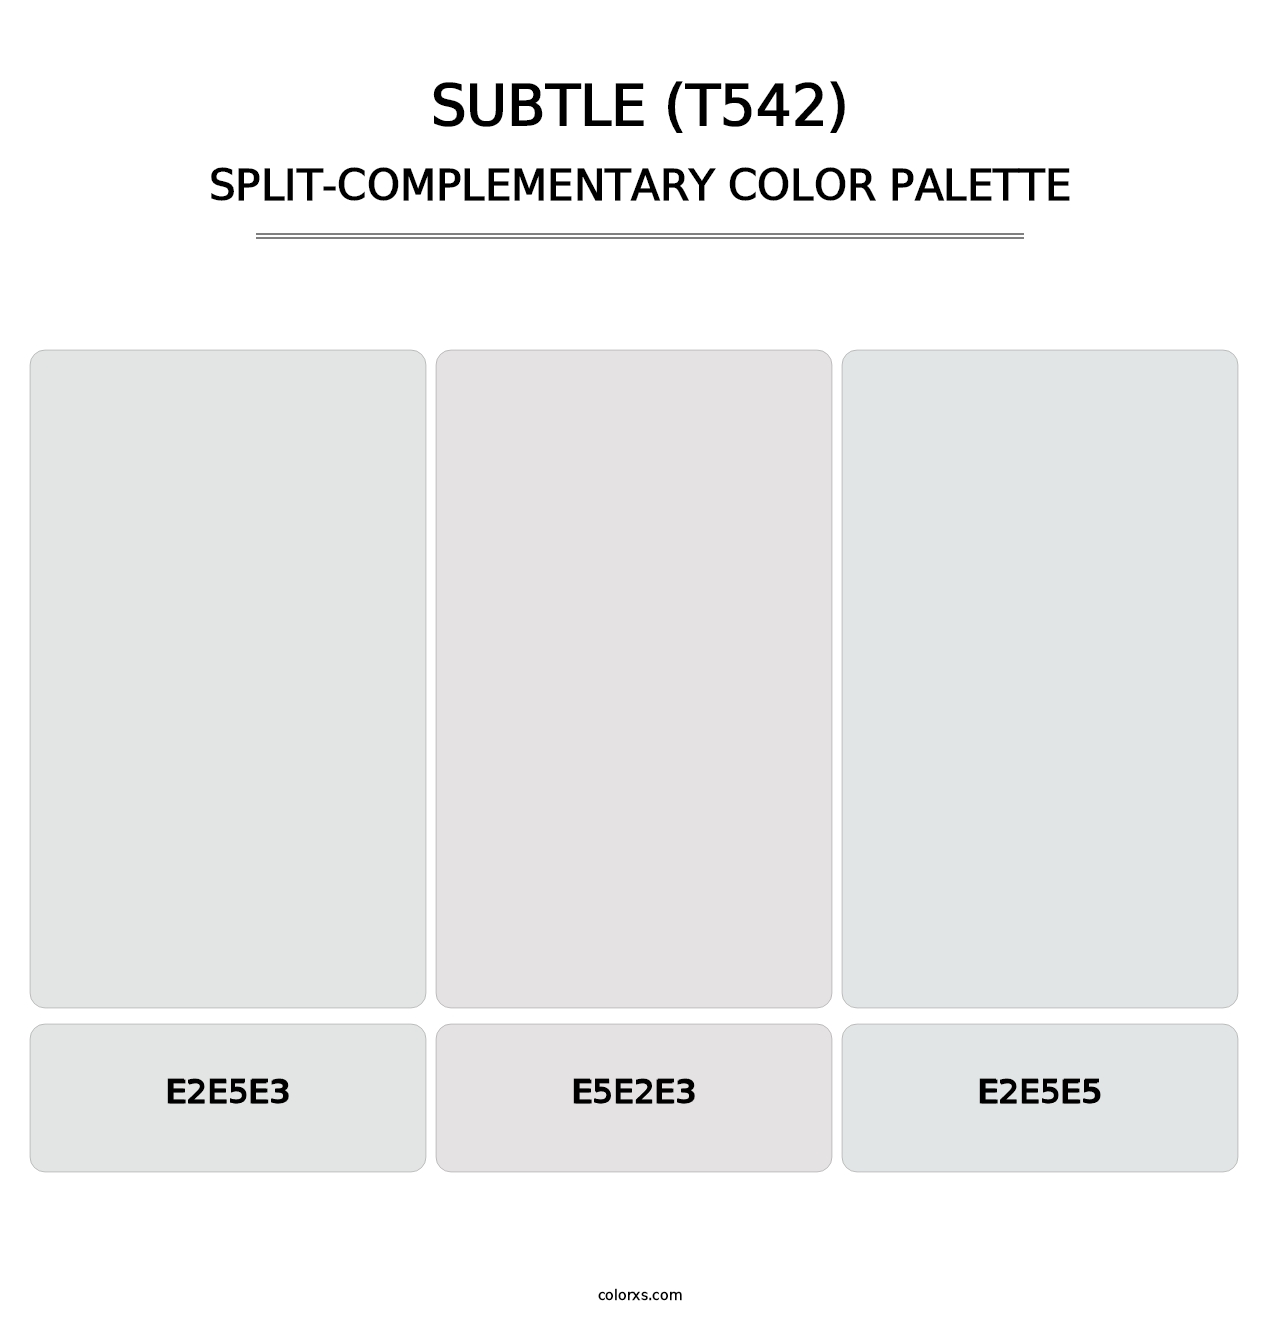 Subtle (T542) - Split-Complementary Color Palette